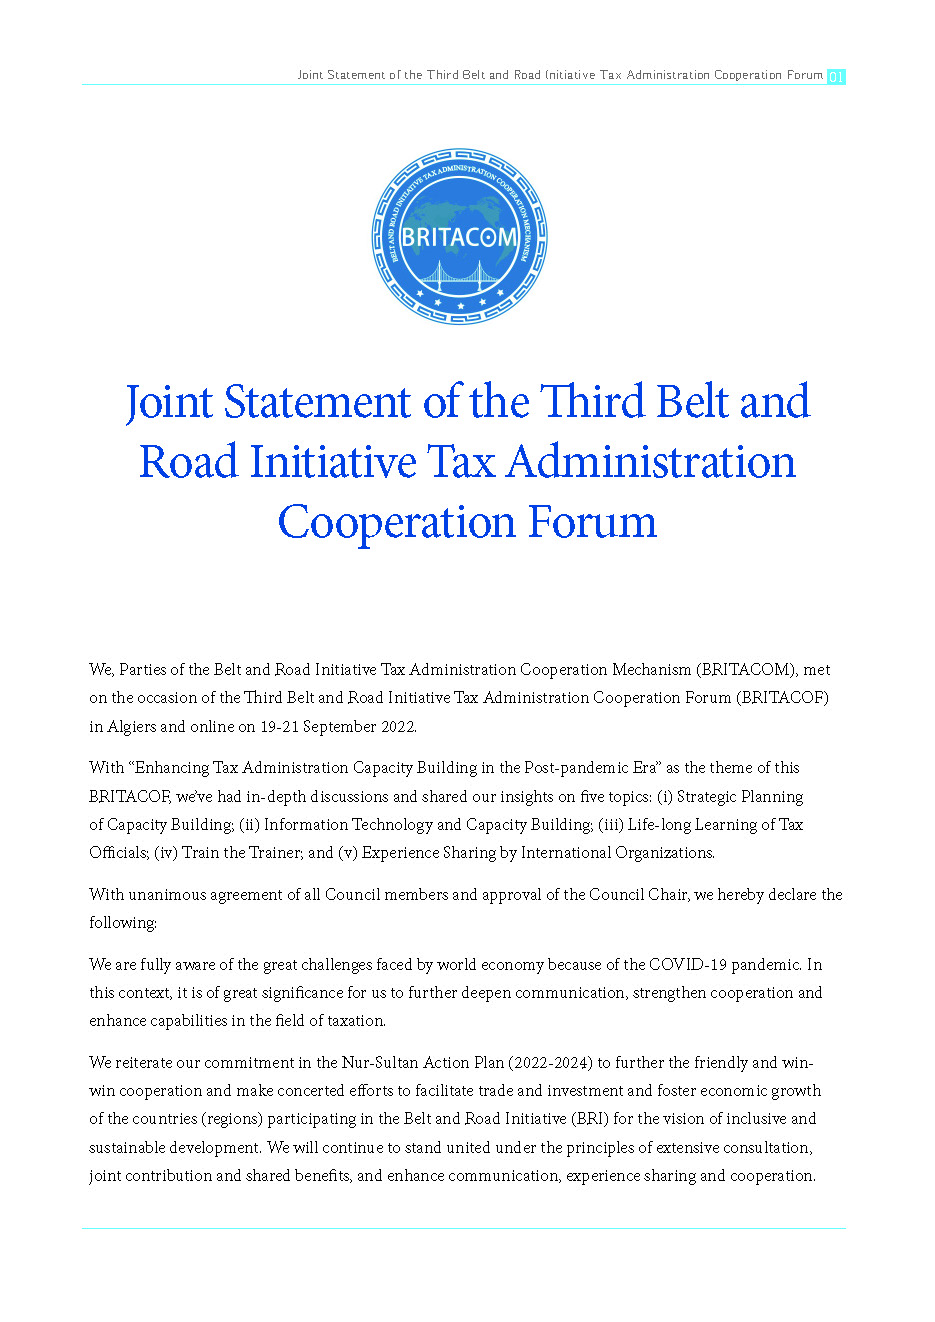 页面提取自－Joint Statement of the Third Belt and Road Initiative Tax Administration Cooperation Forum.jpg